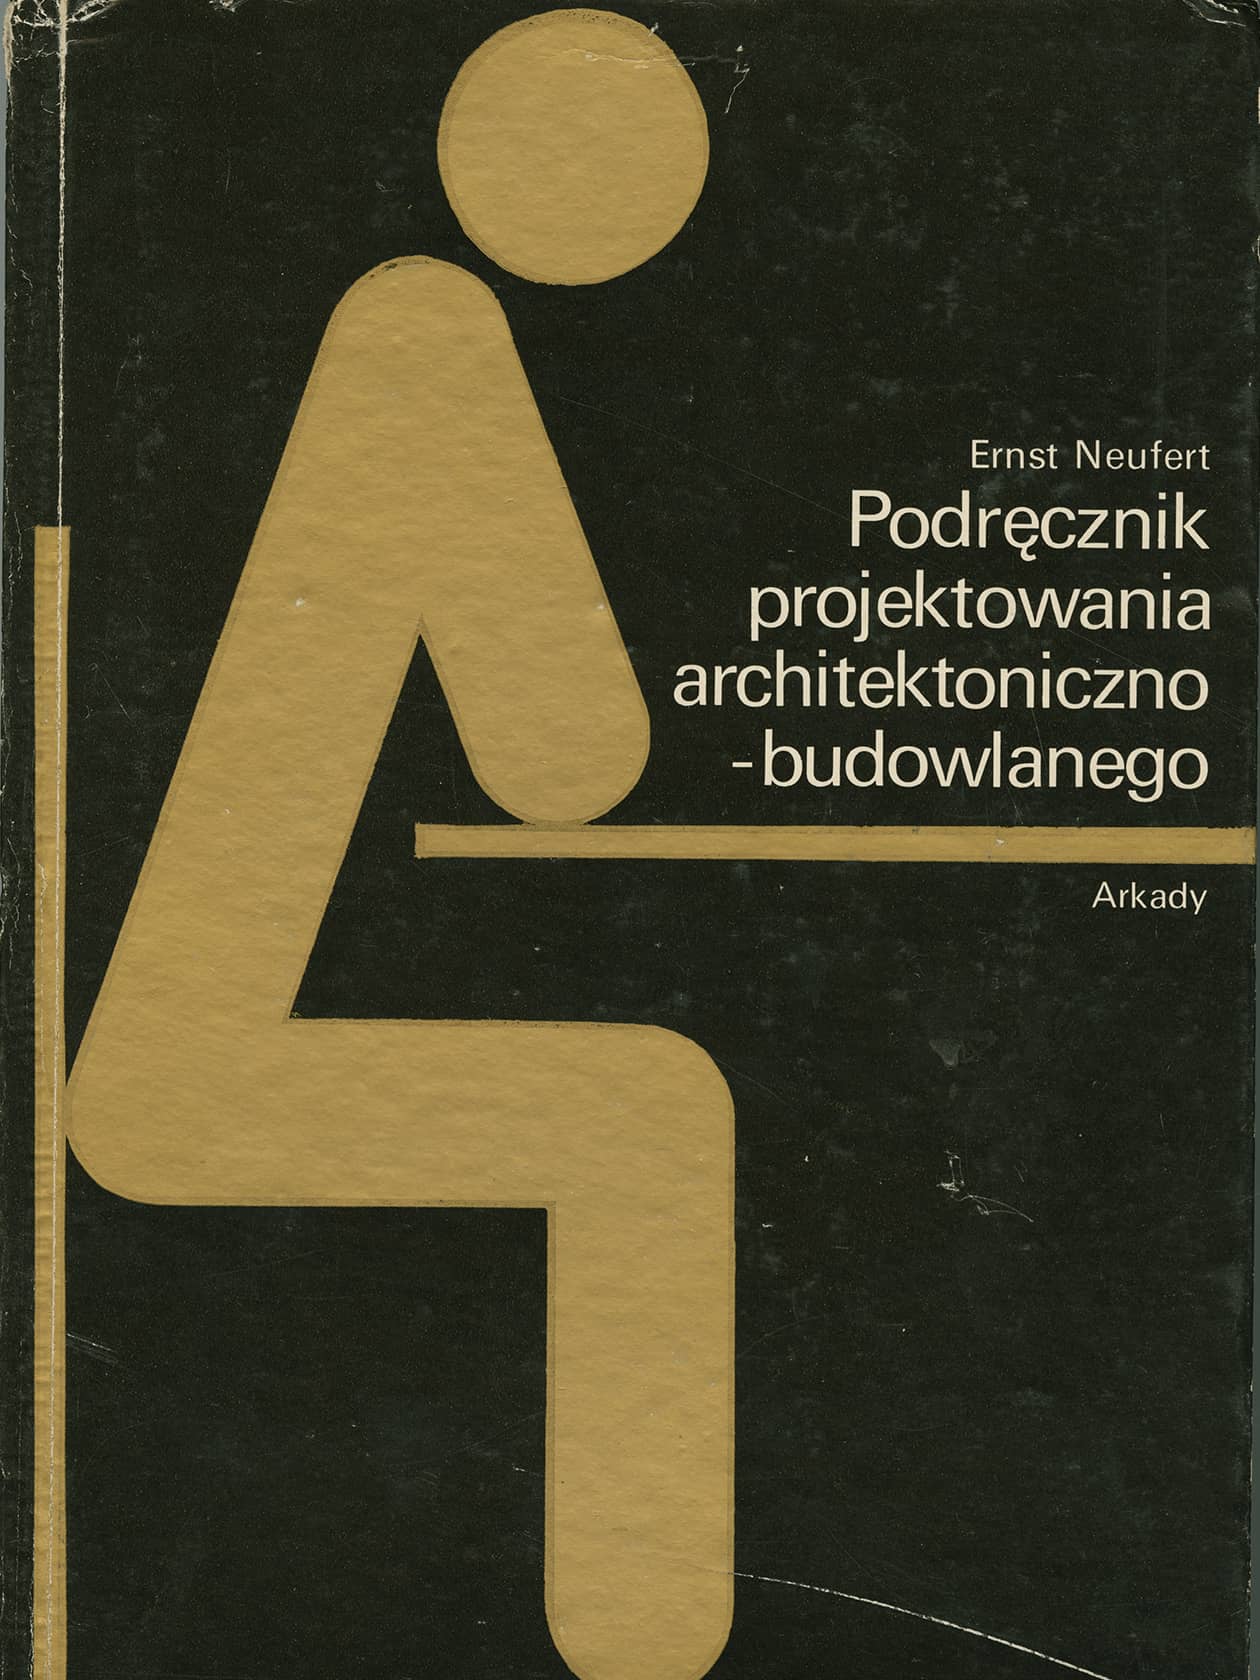 Polnische Ausgabe der Bauentwurfslehre von Ernst Neufert, 1980